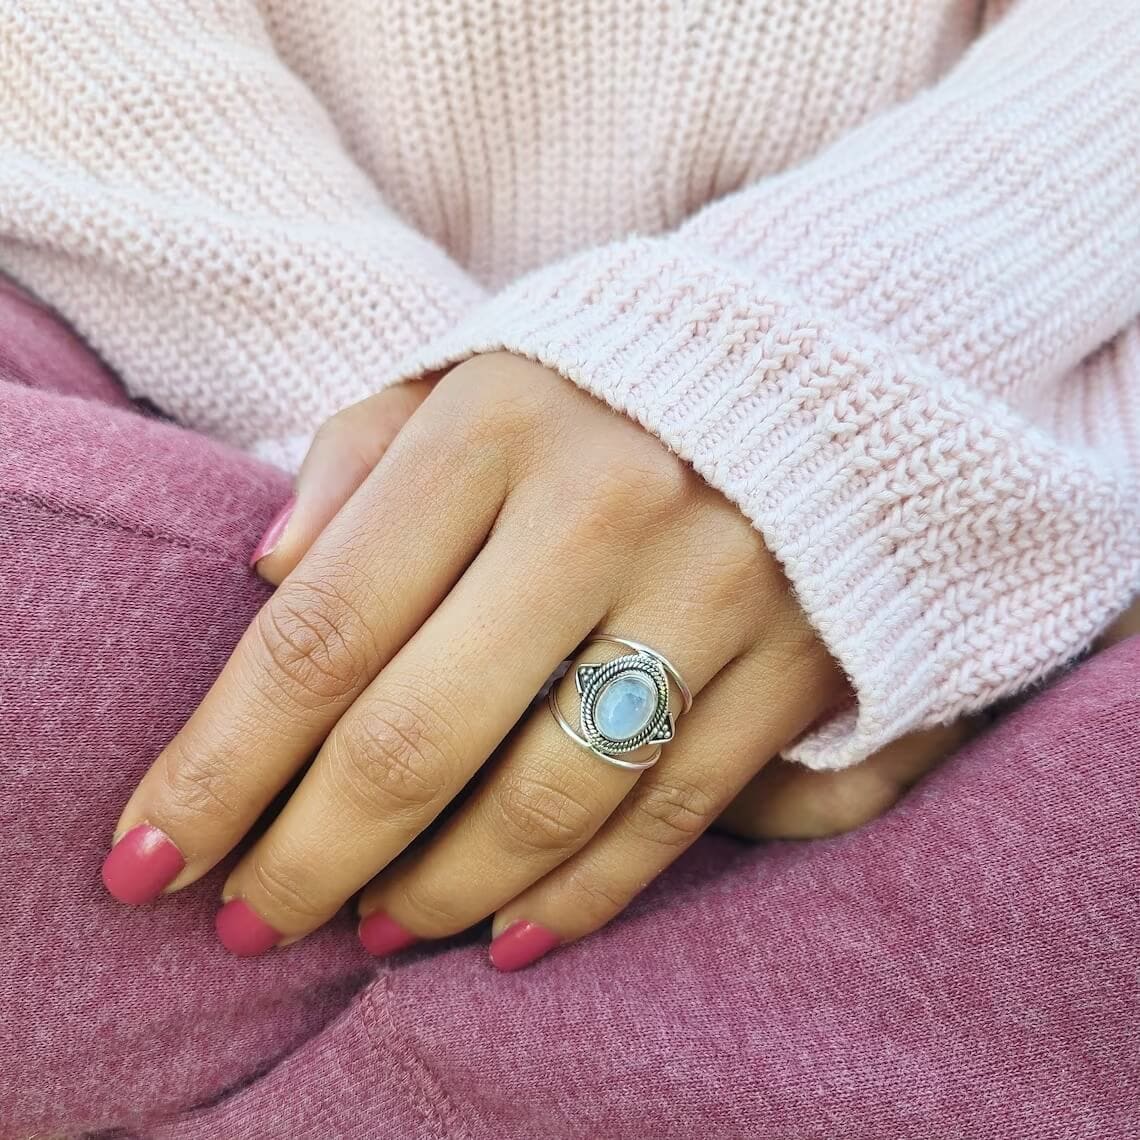 moonstone boho ring on the woman's finger